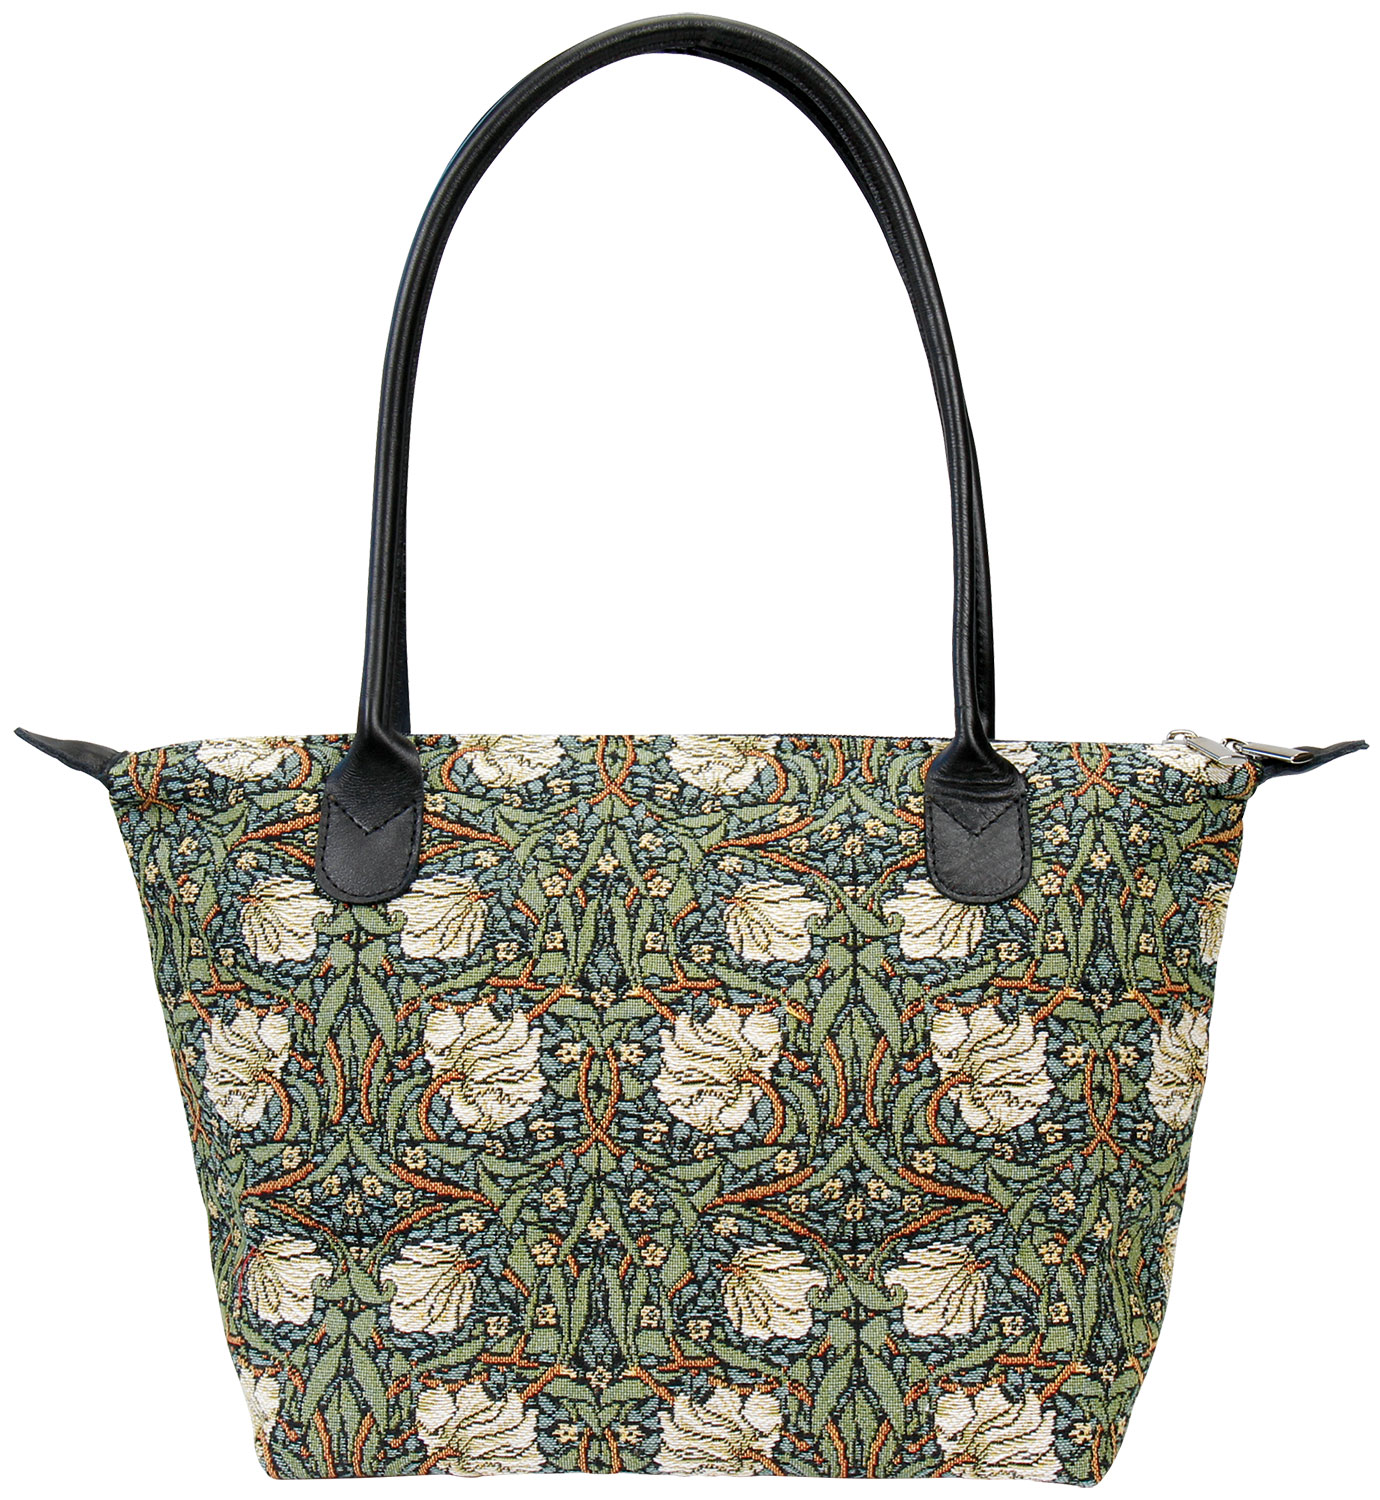 Handbag "Pimpernel" - after William Morris